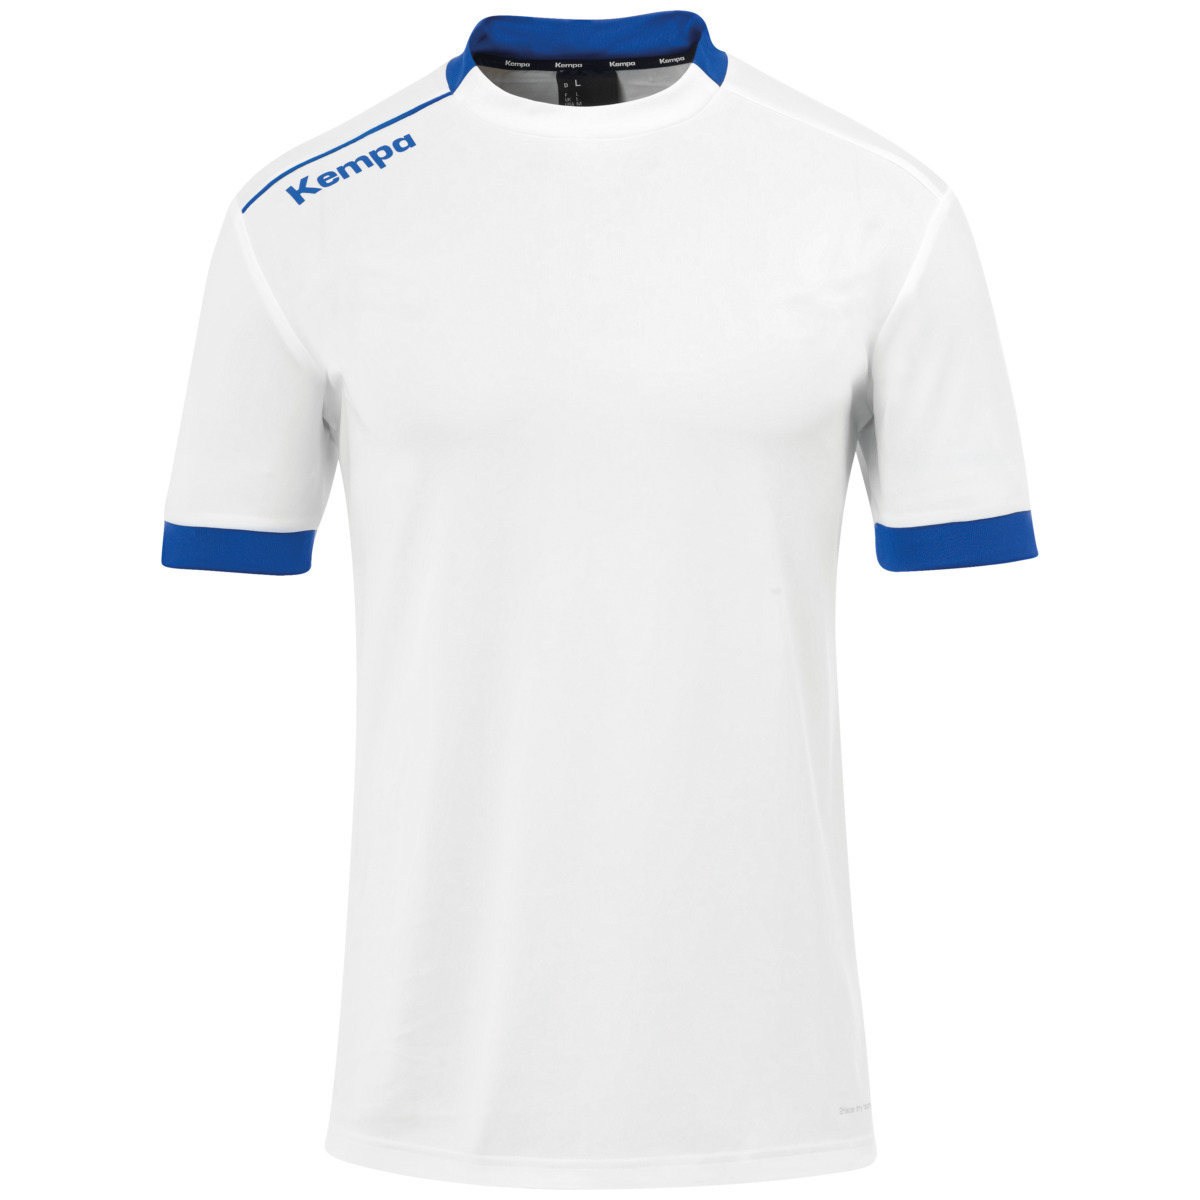 Camiseta Kempa Player - azul-royal-blanco - 